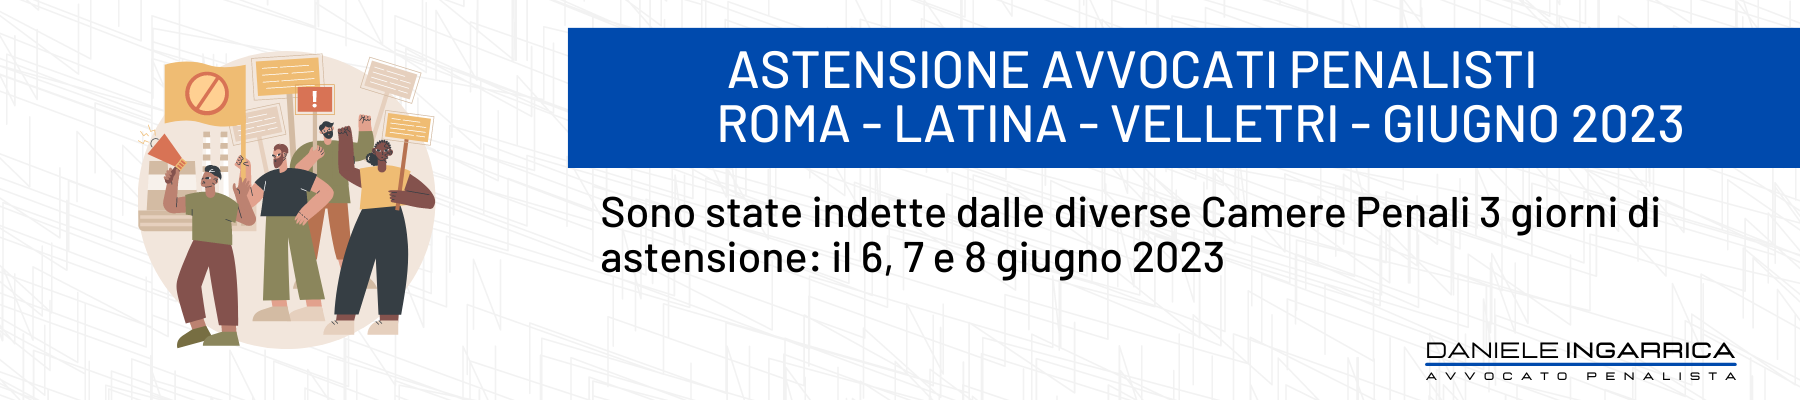 Astensione penalisti roma velletri latina giugno 2023